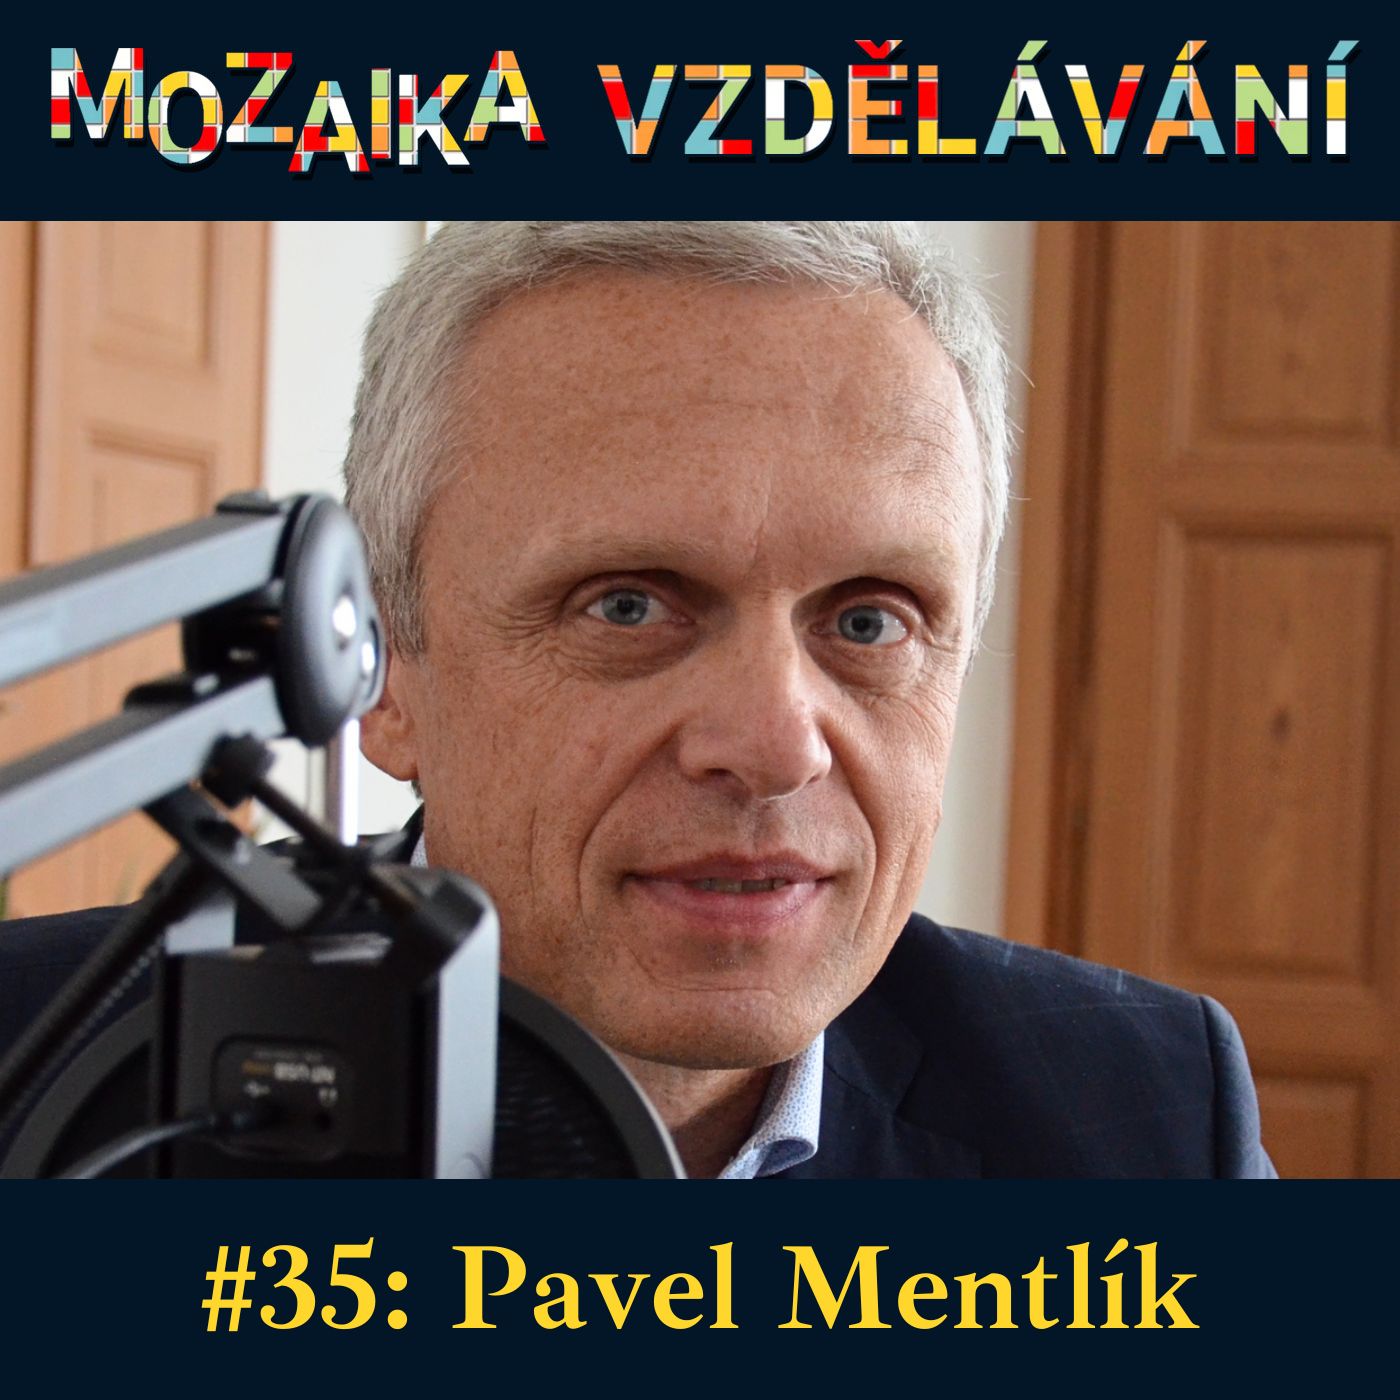 Mozaika vzdělávání #35: Pavel Mentlík